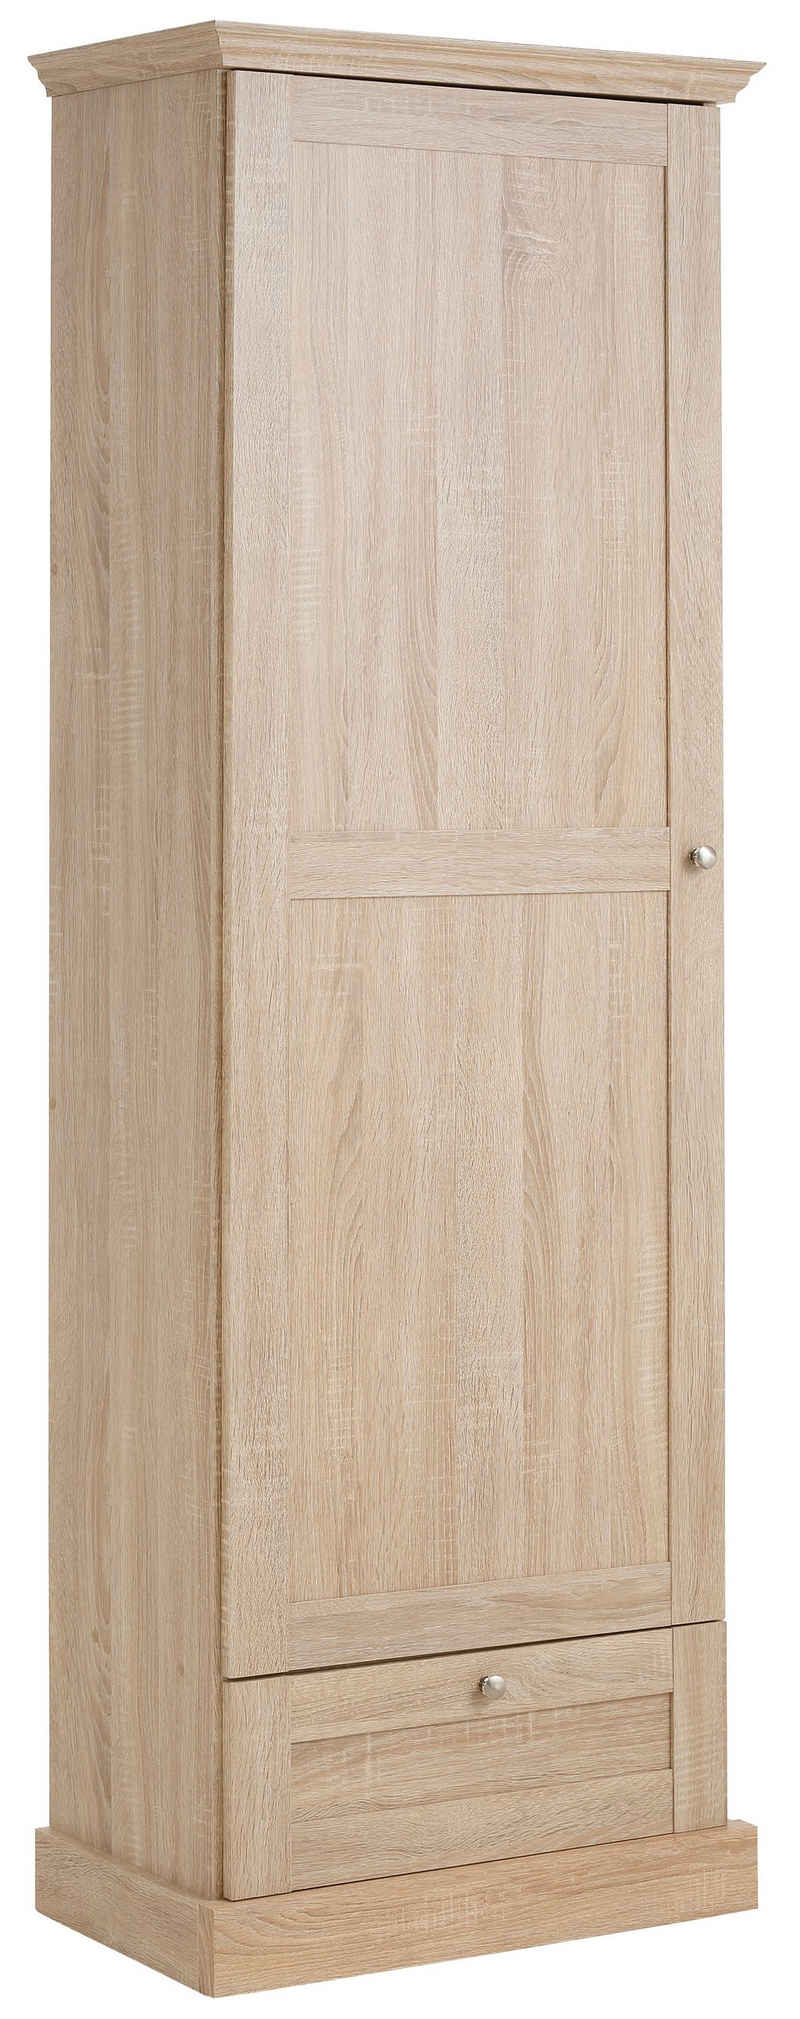 Home affaire Garderobenschrank »Binz« mit schöner Holzoptik, mit vielen Stauraummöglichkeiten, Höhe 180 cm